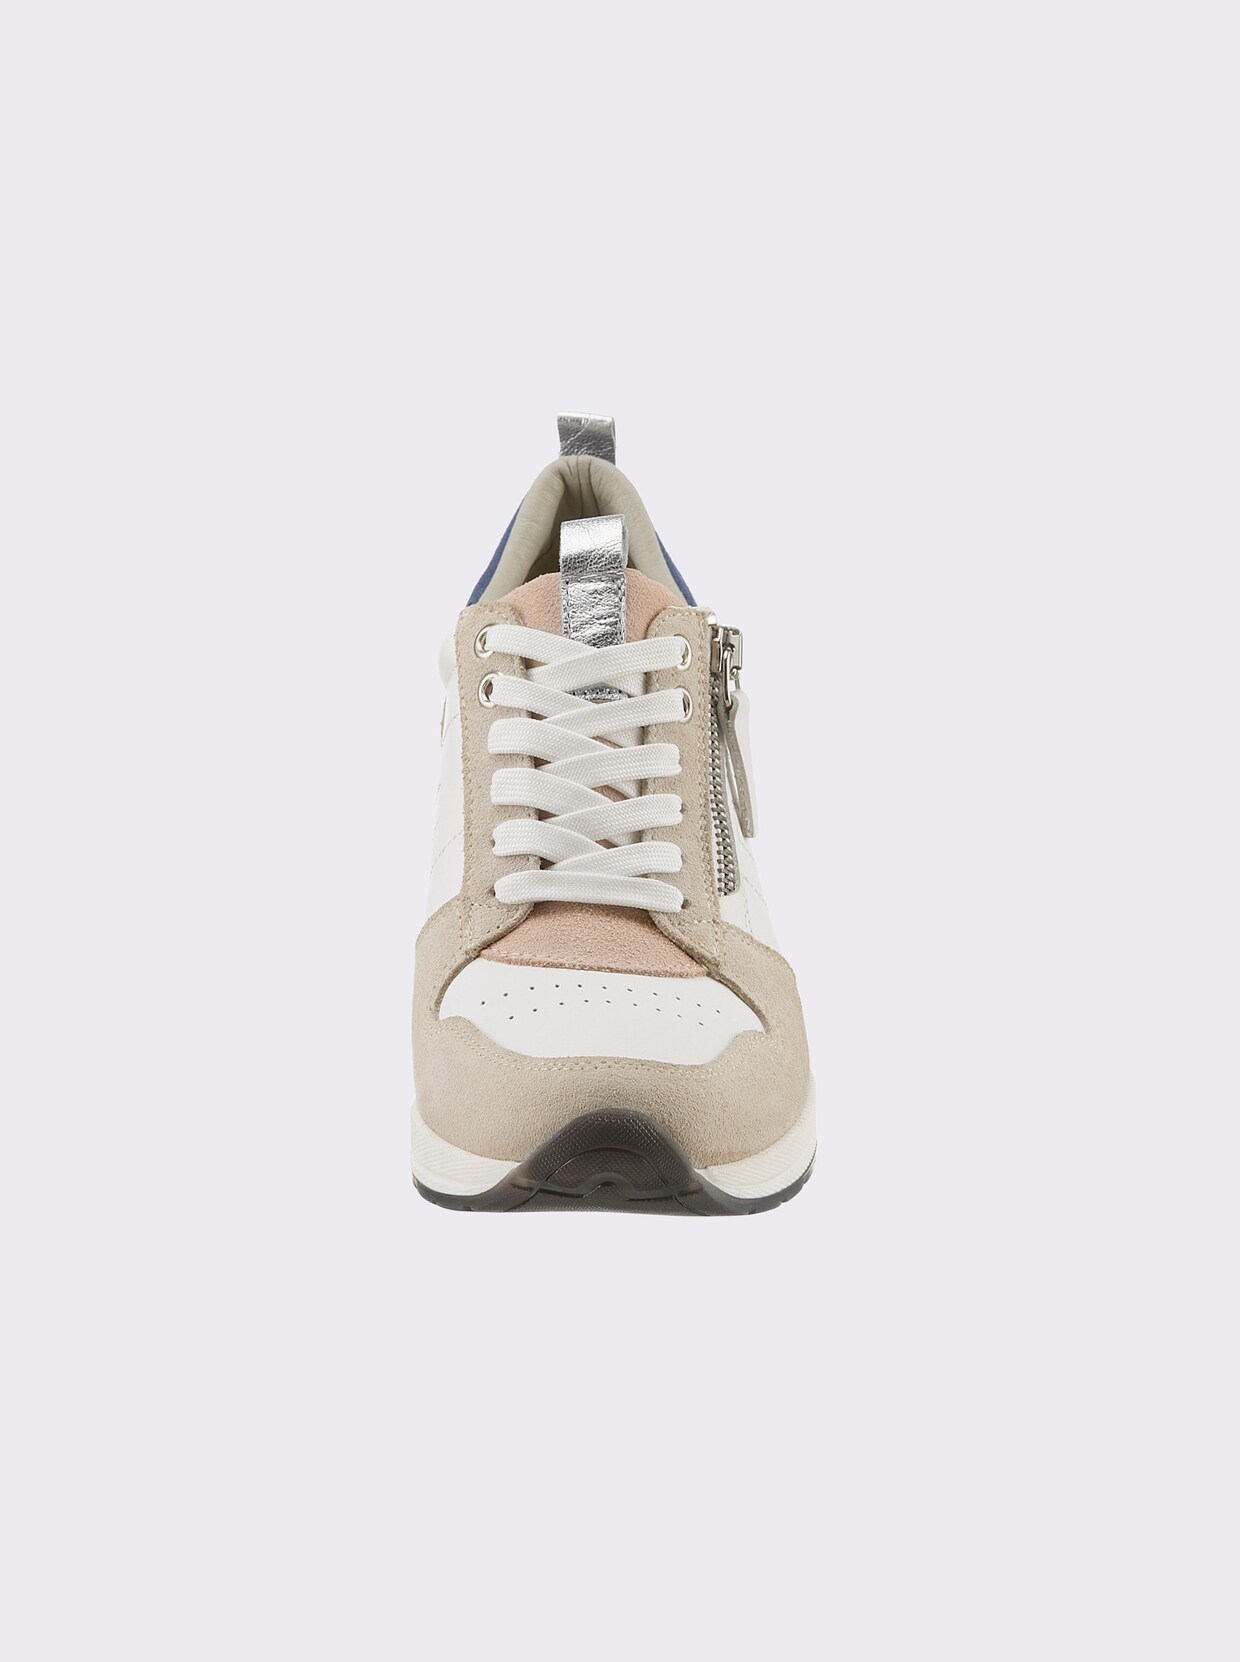 heine Sneakers - blanc-pastel